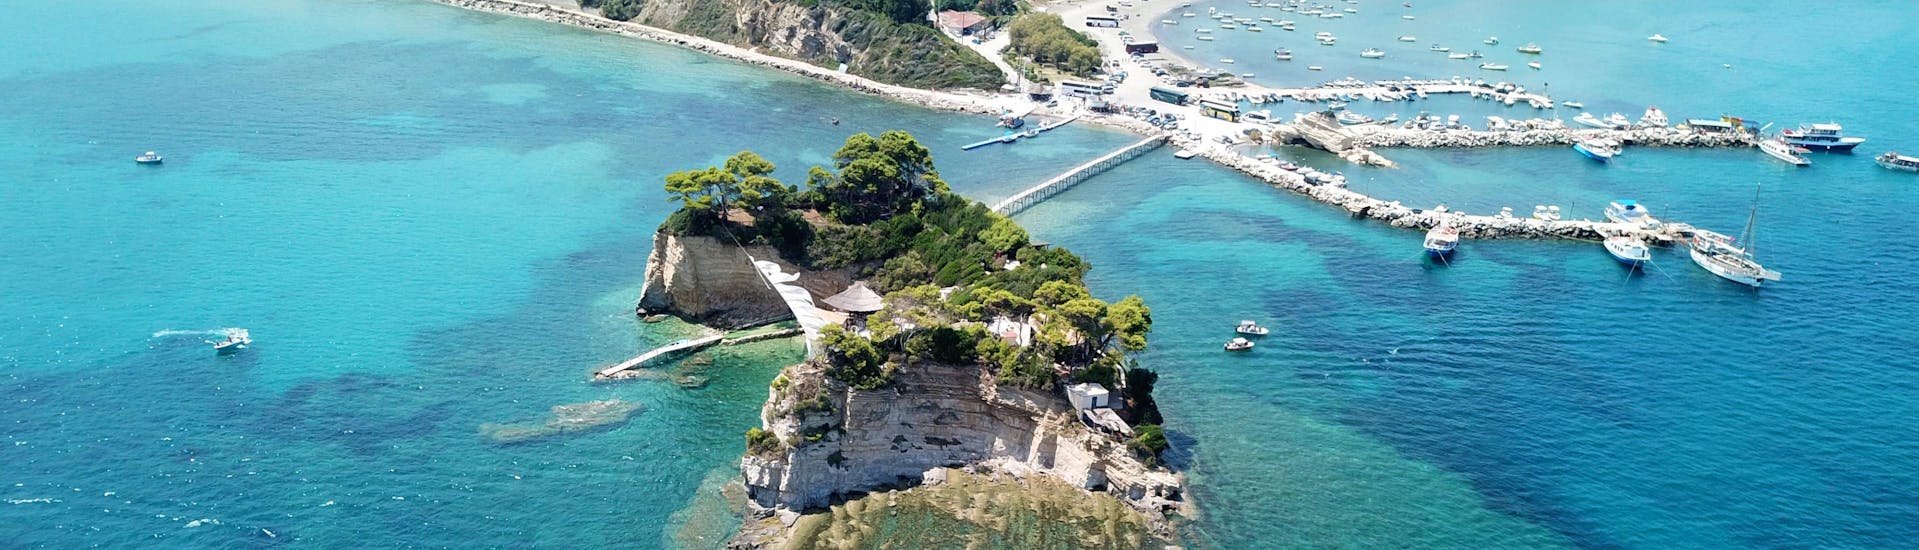 Photo de la baie de Laganas, Zakynthos, et du pont en bois qui relie l'île.